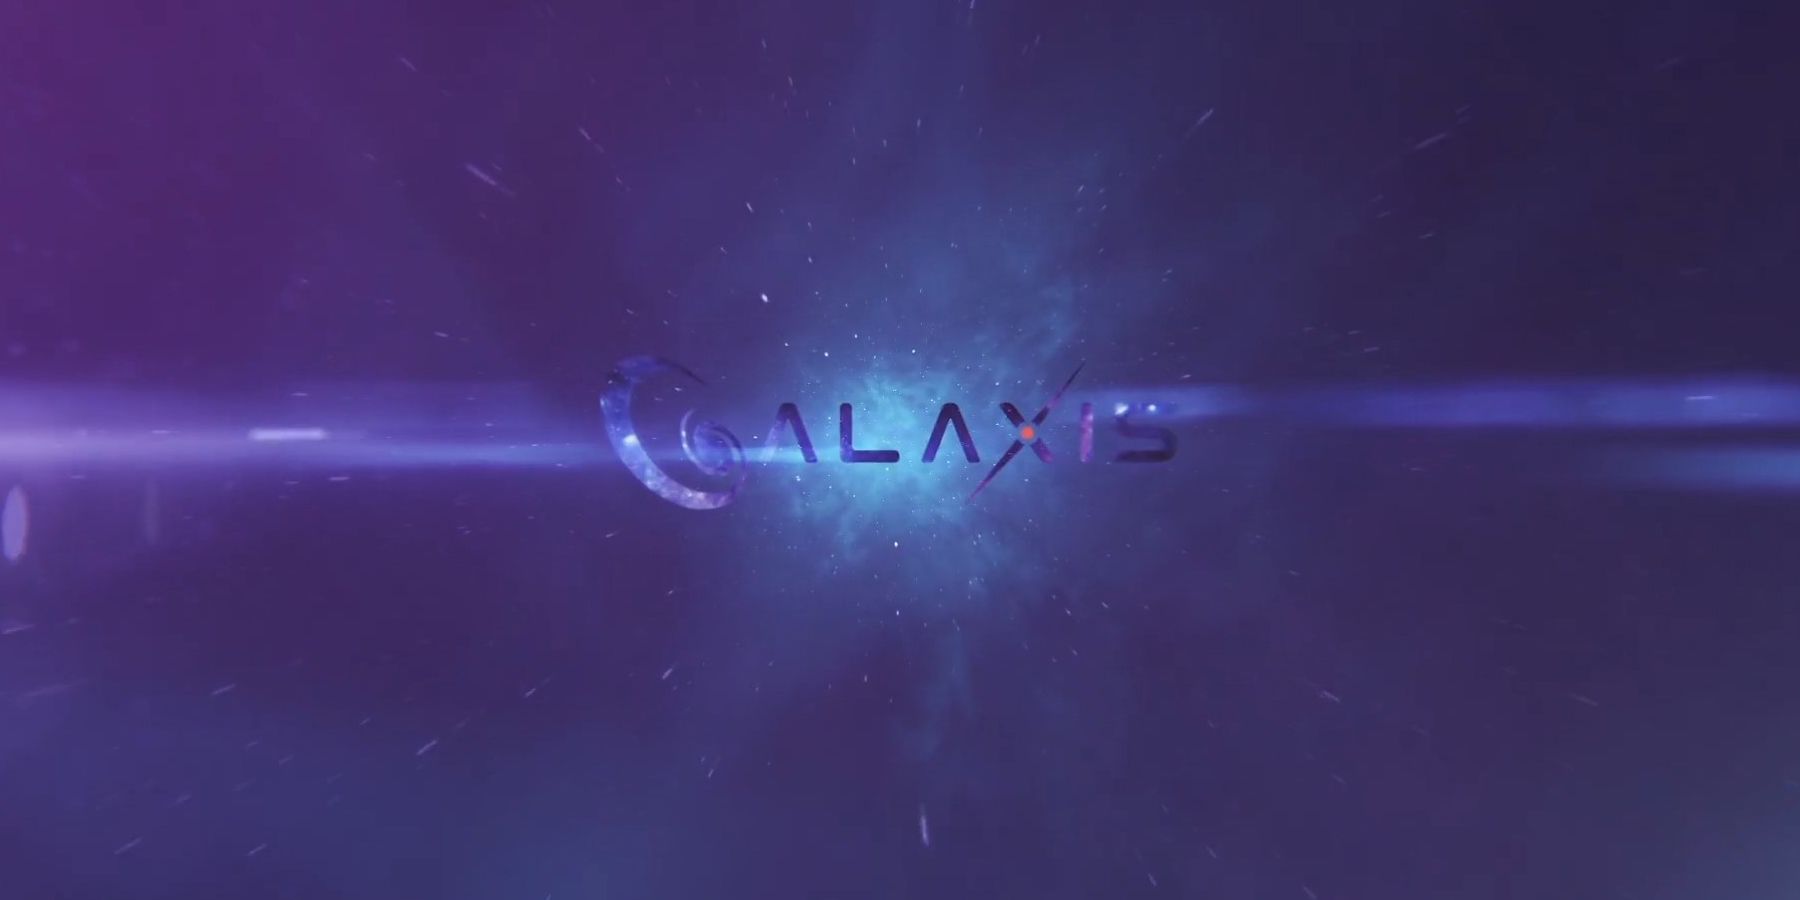 Интервю на Galaxis: Изпълнителният директор Макс Галардо подробности за потока на платформата на платформата, умереността на общността и други